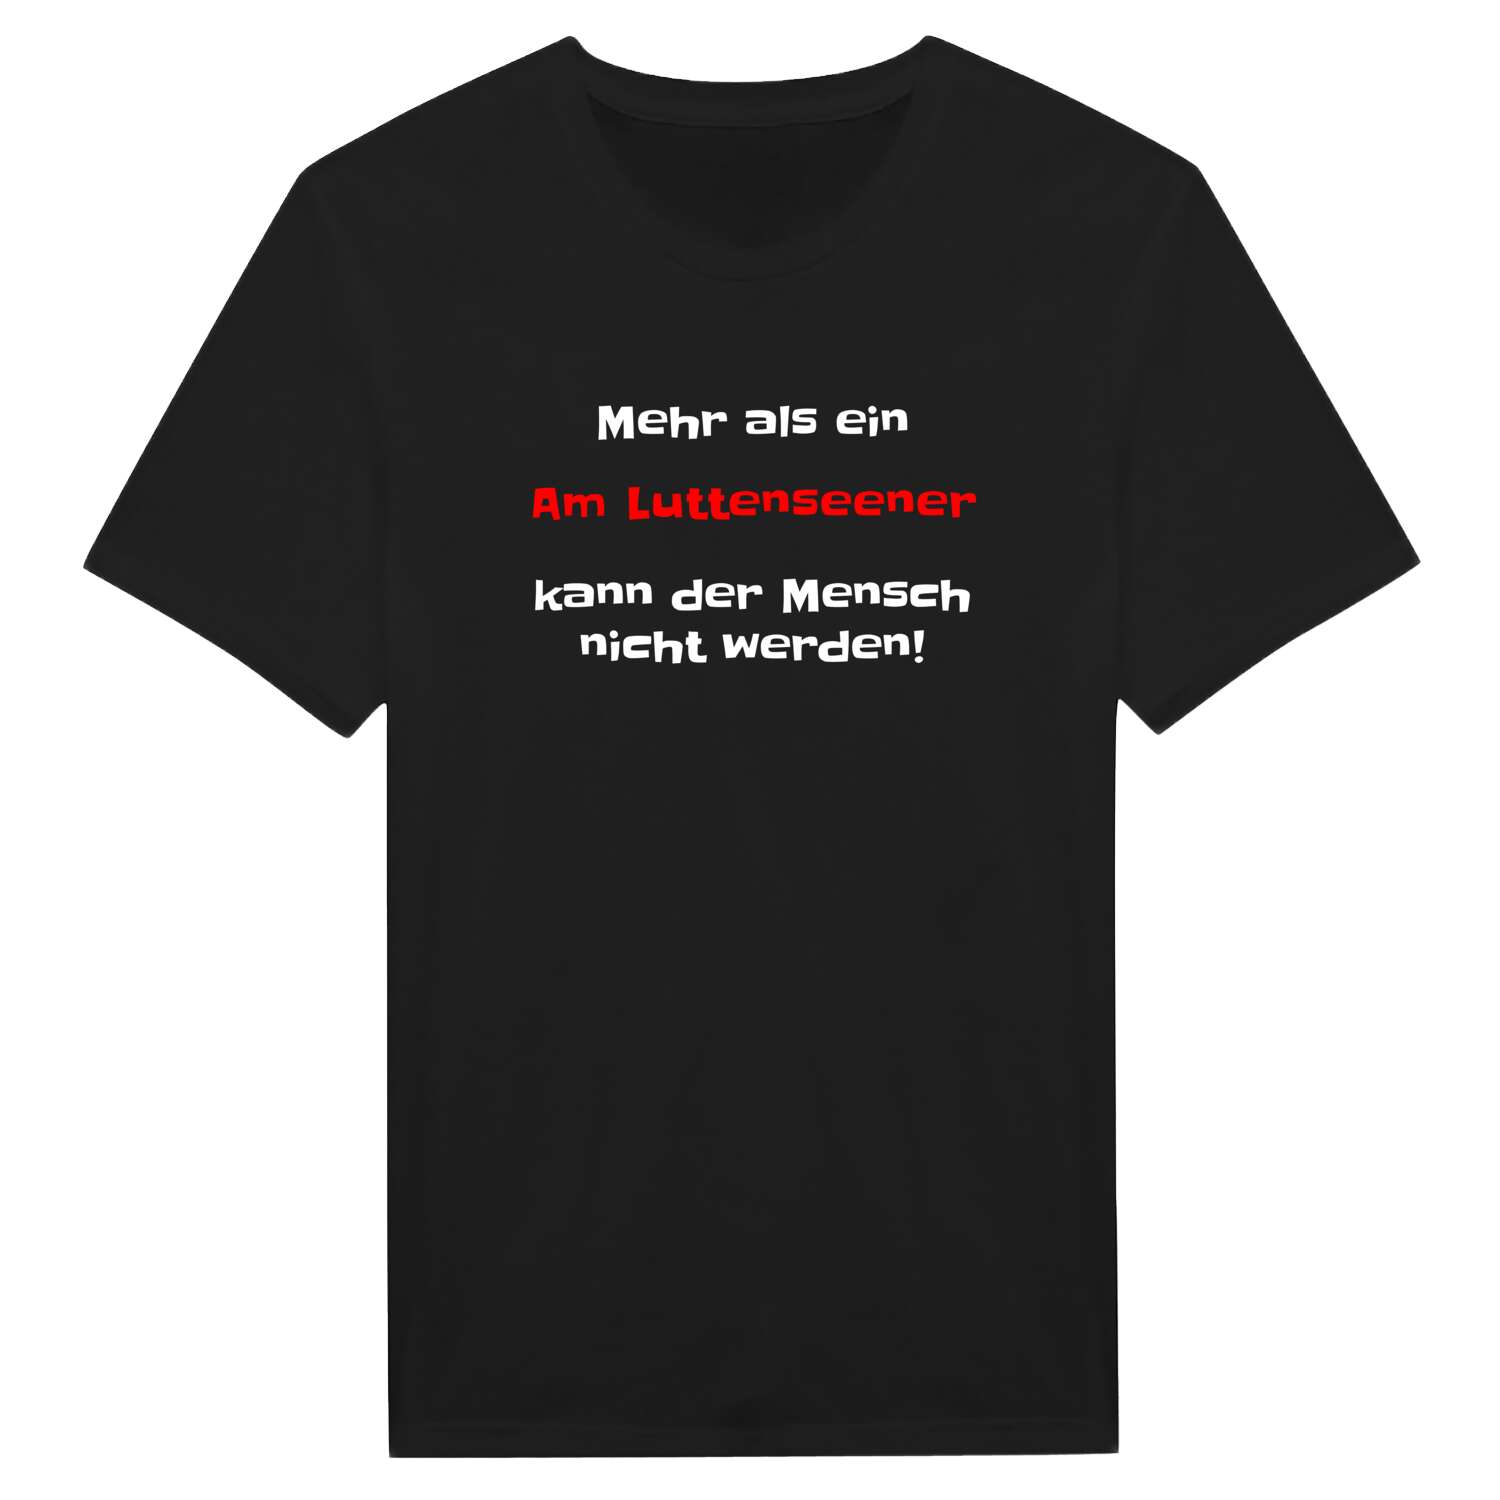 Am Luttensee T-Shirt »Mehr als ein«